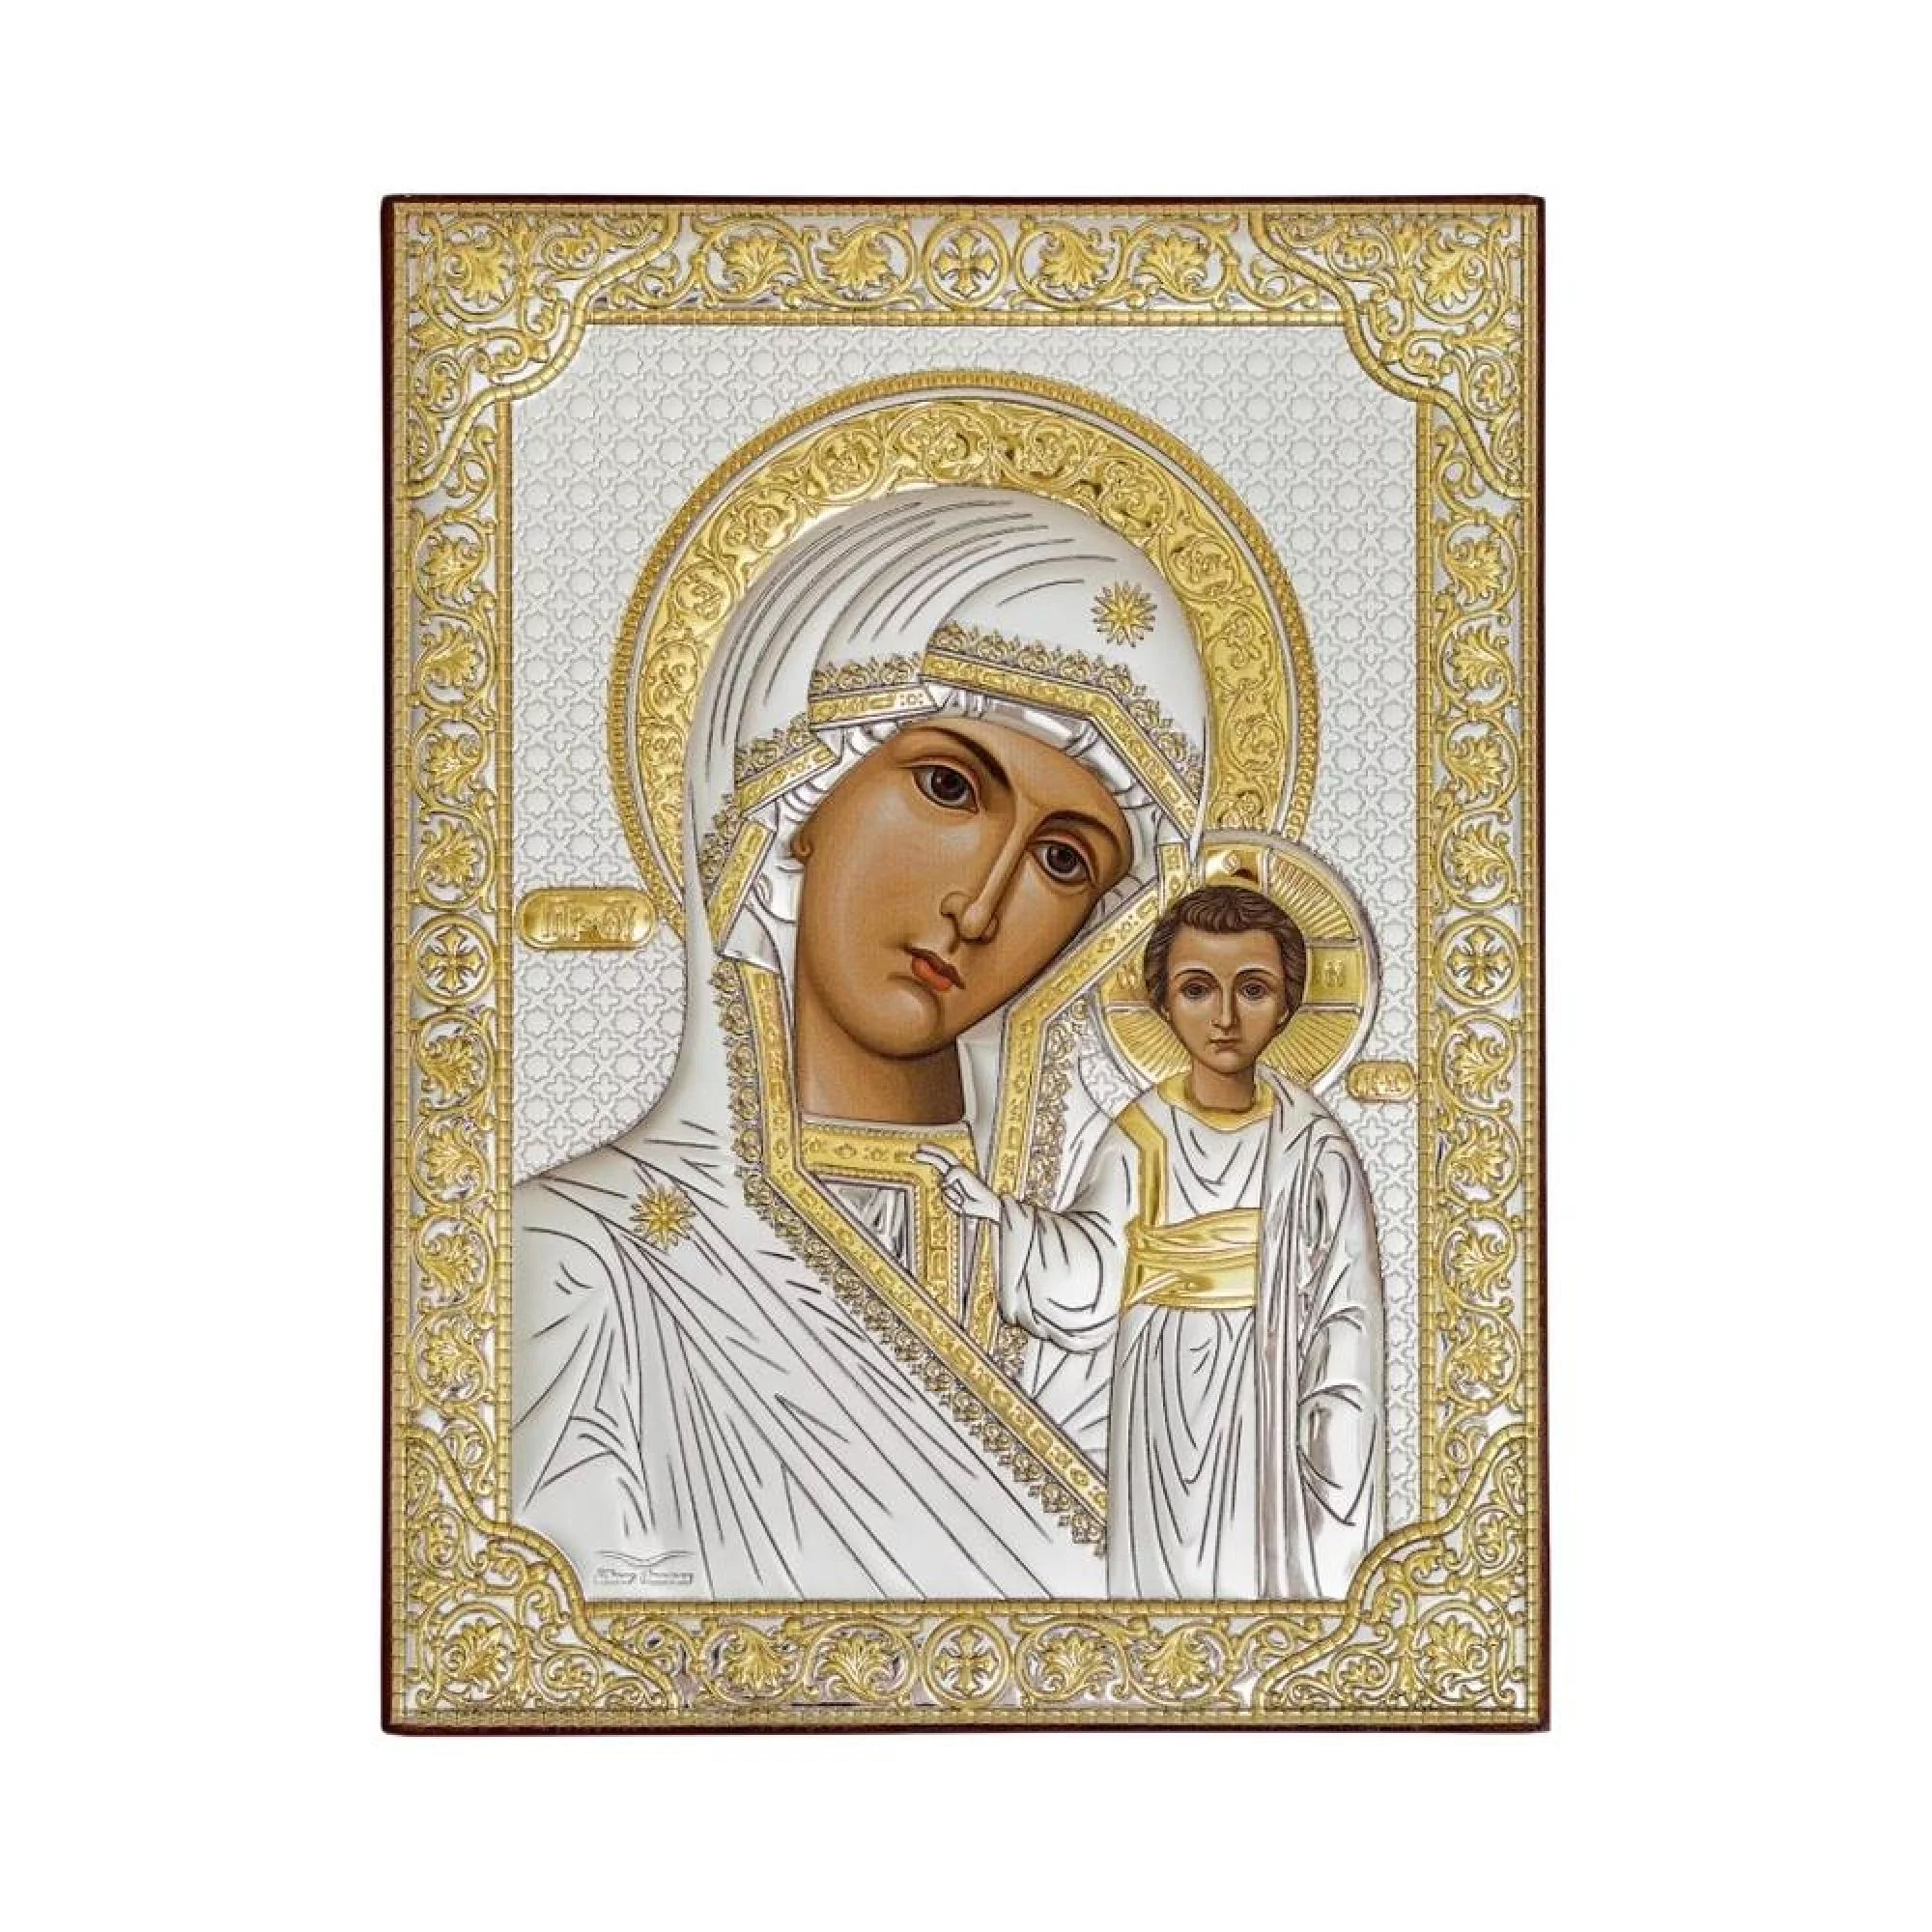 Икона из серебра Божья Матерь "Казанская" 120х160 мм - 1341446 – изображение 1